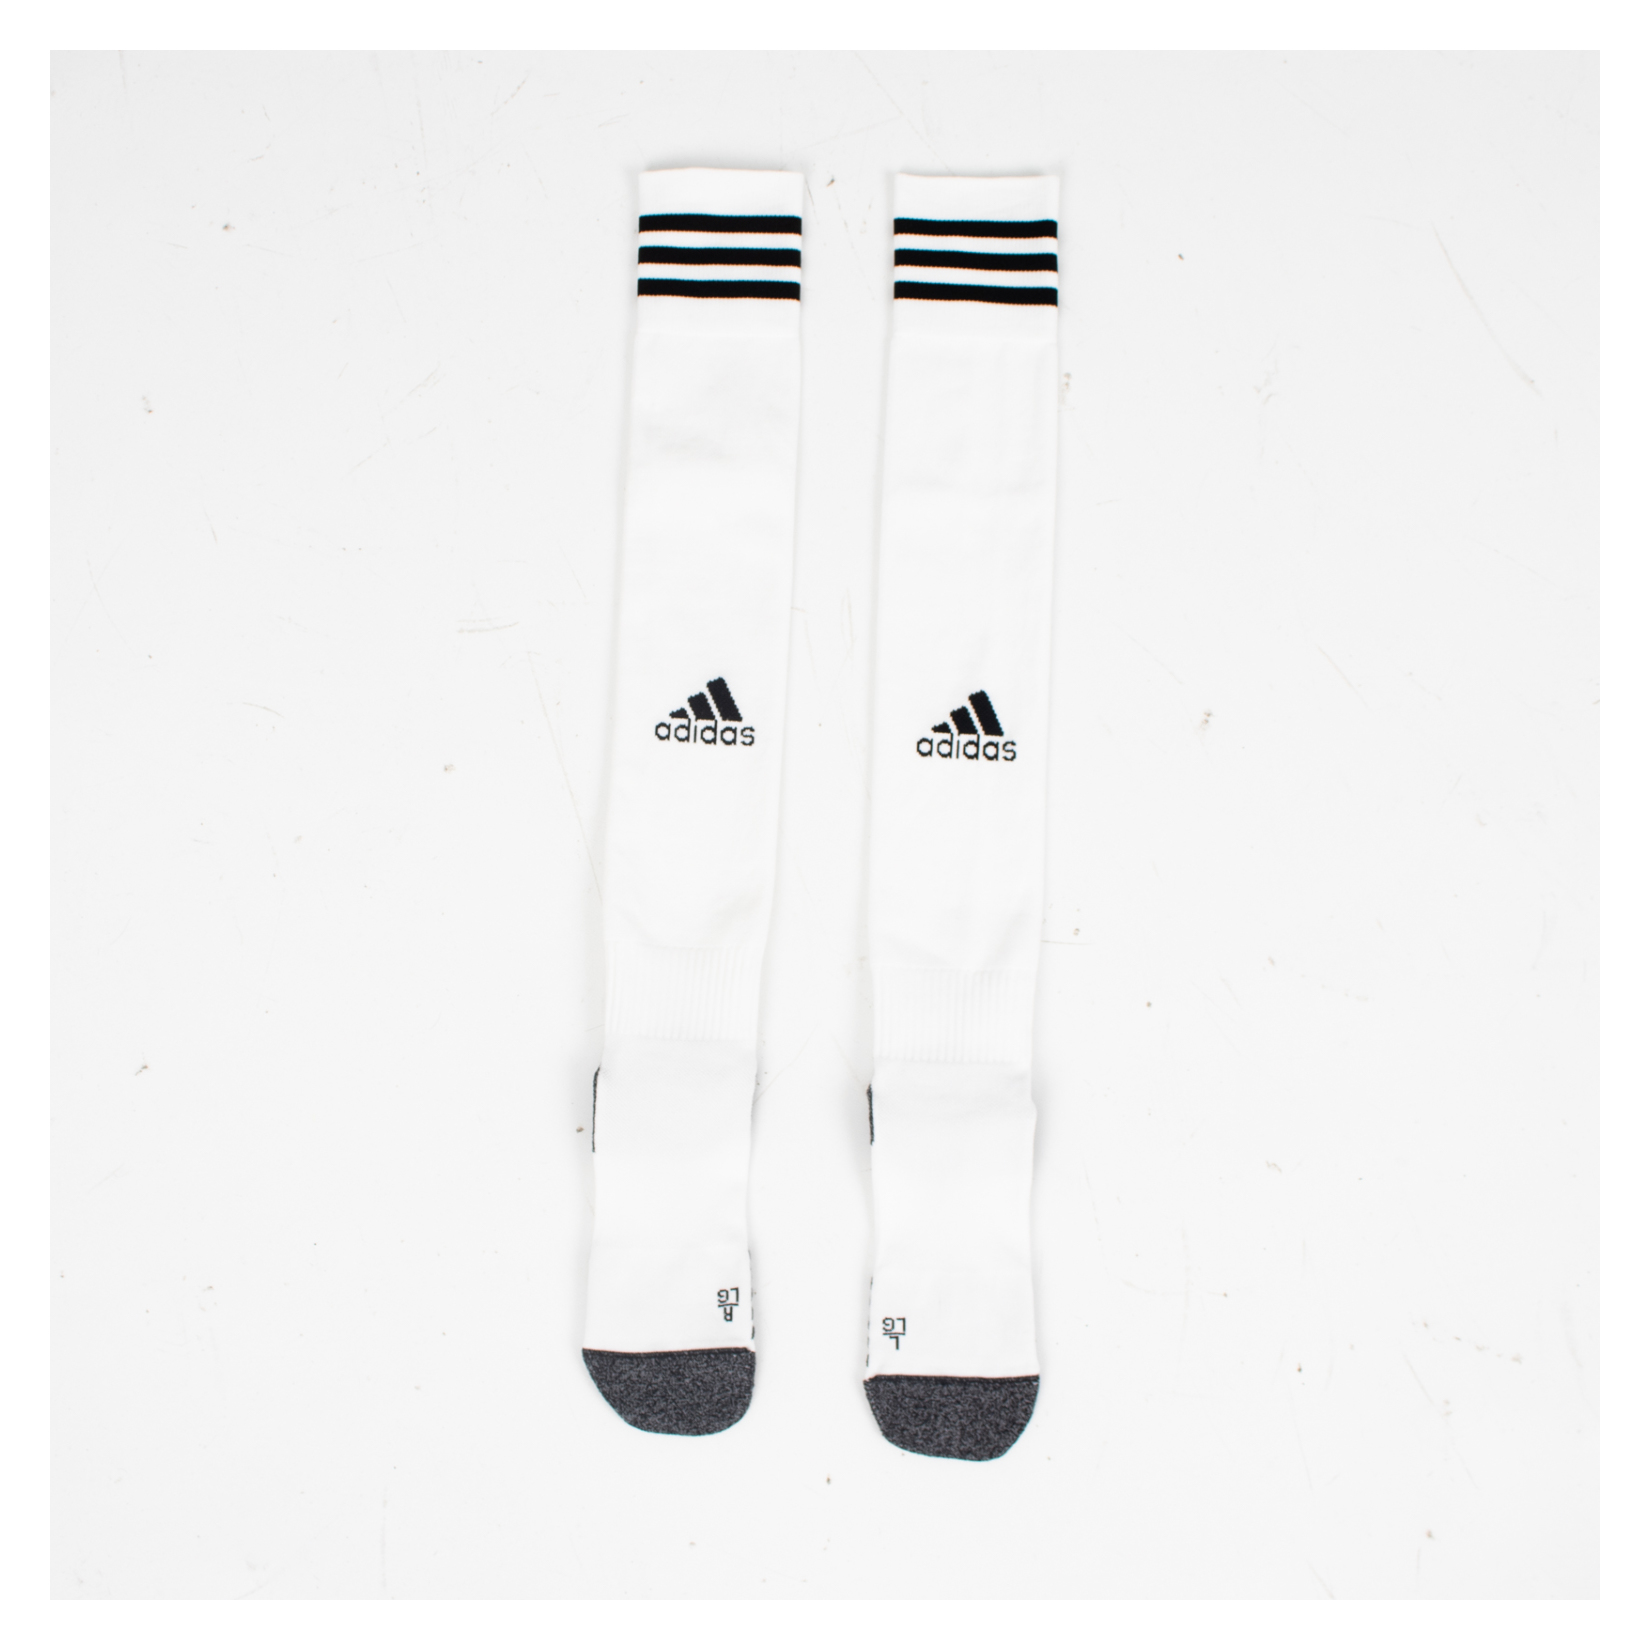 adidas ADI 21 Pro Socks